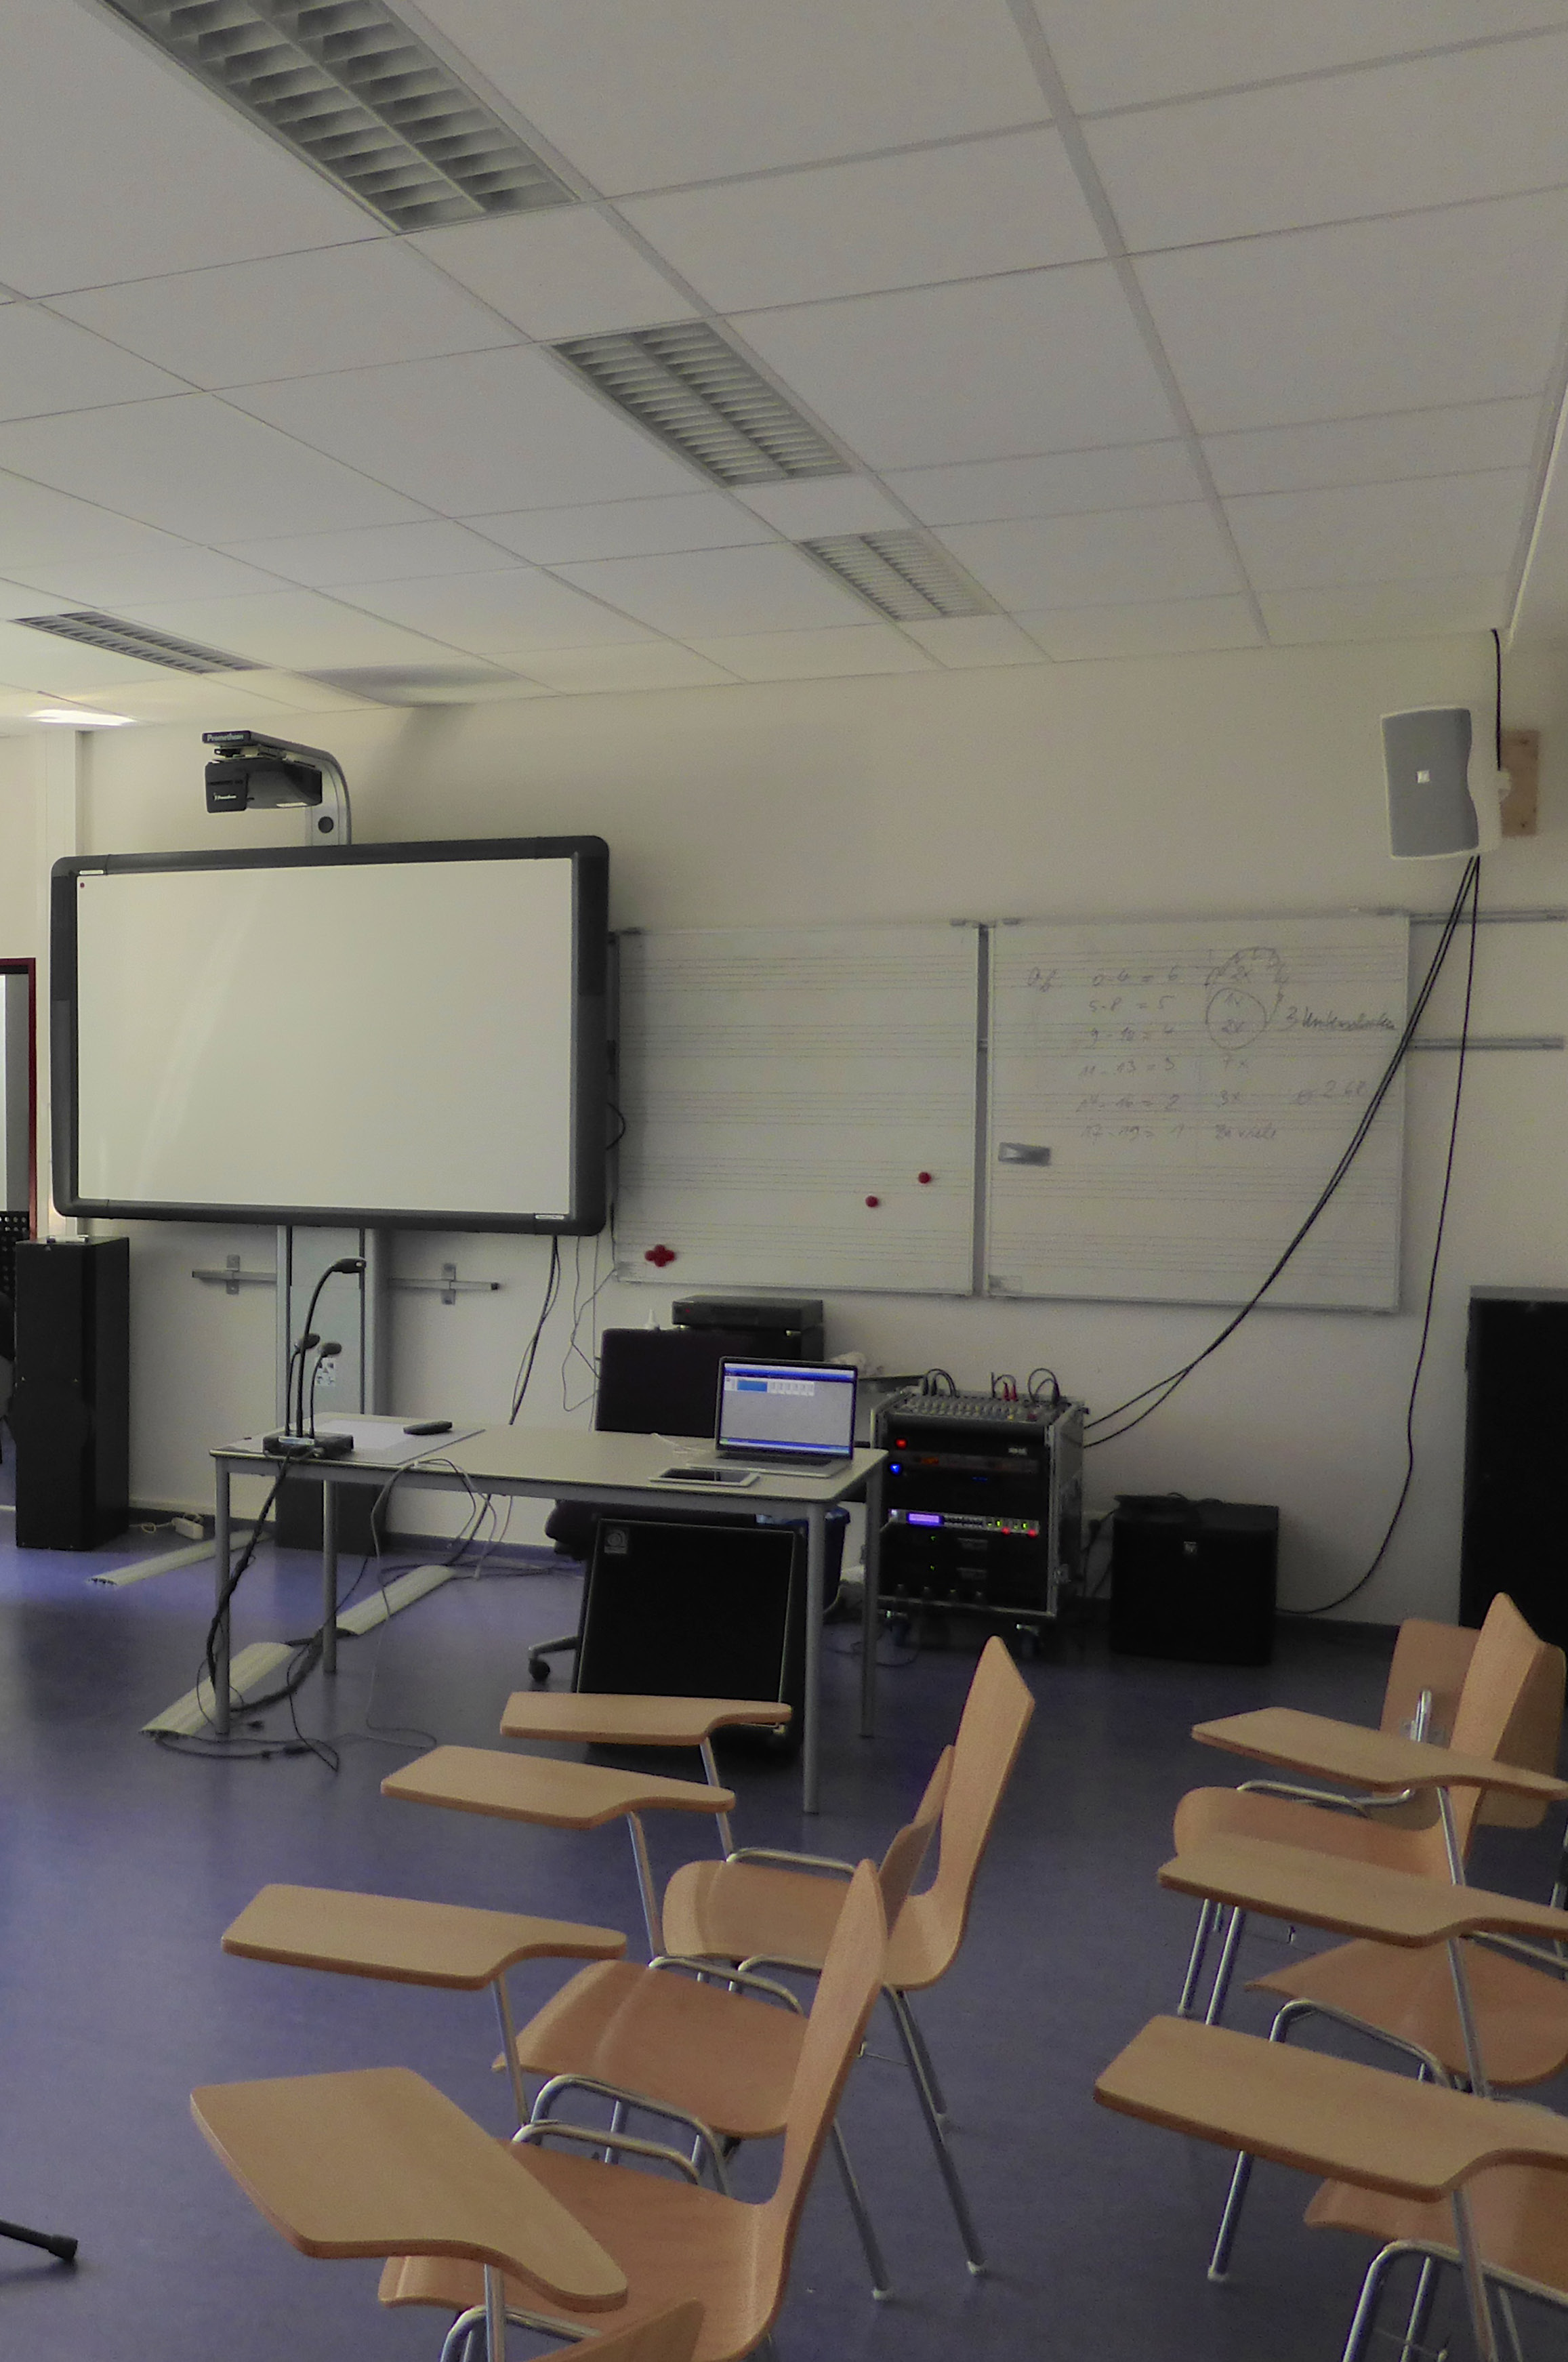 Fallbeispiel: Schule Projektbeschreibung Installation einer Beschallungsanlage in einem Klassenraum für den Musikunterricht Zielsetzung Originalgetreue Wiedergabe von Musikund Sprachinhalten Einfache